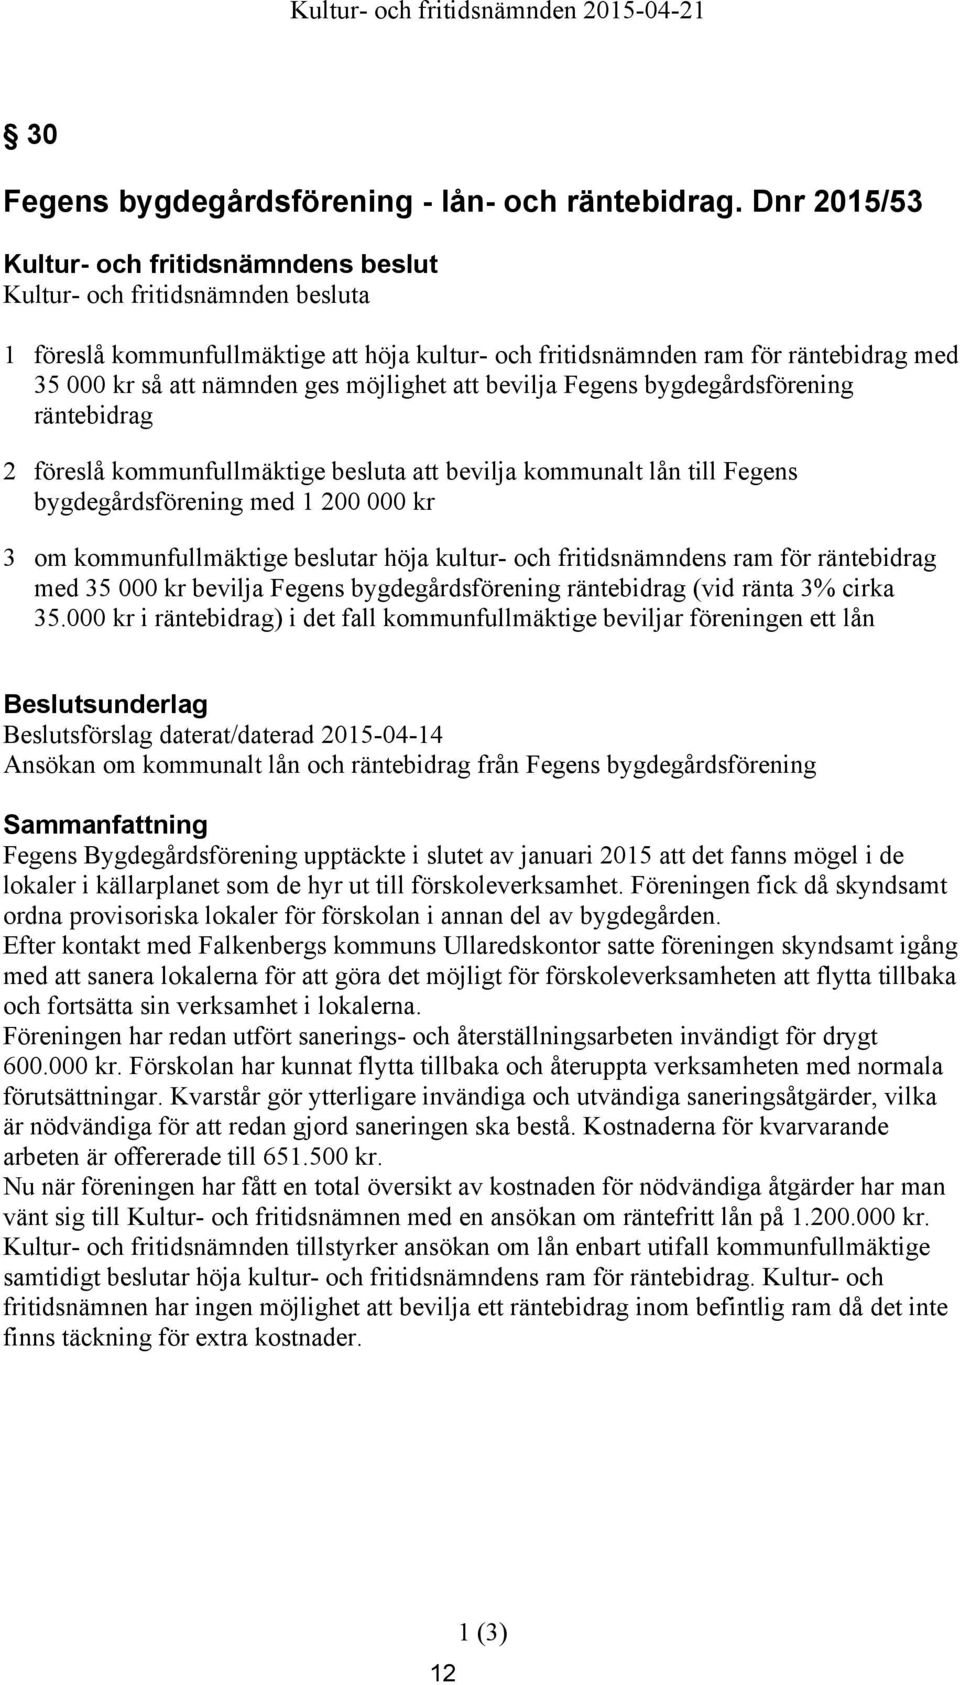 bygdegårdsförening räntebidrag 2 föreslå kommunfullmäktige besluta att bevilja kommunalt lån till Fegens bygdegårdsförening med 1 200 000 kr 3 om kommunfullmäktige beslutar höja kultur- och